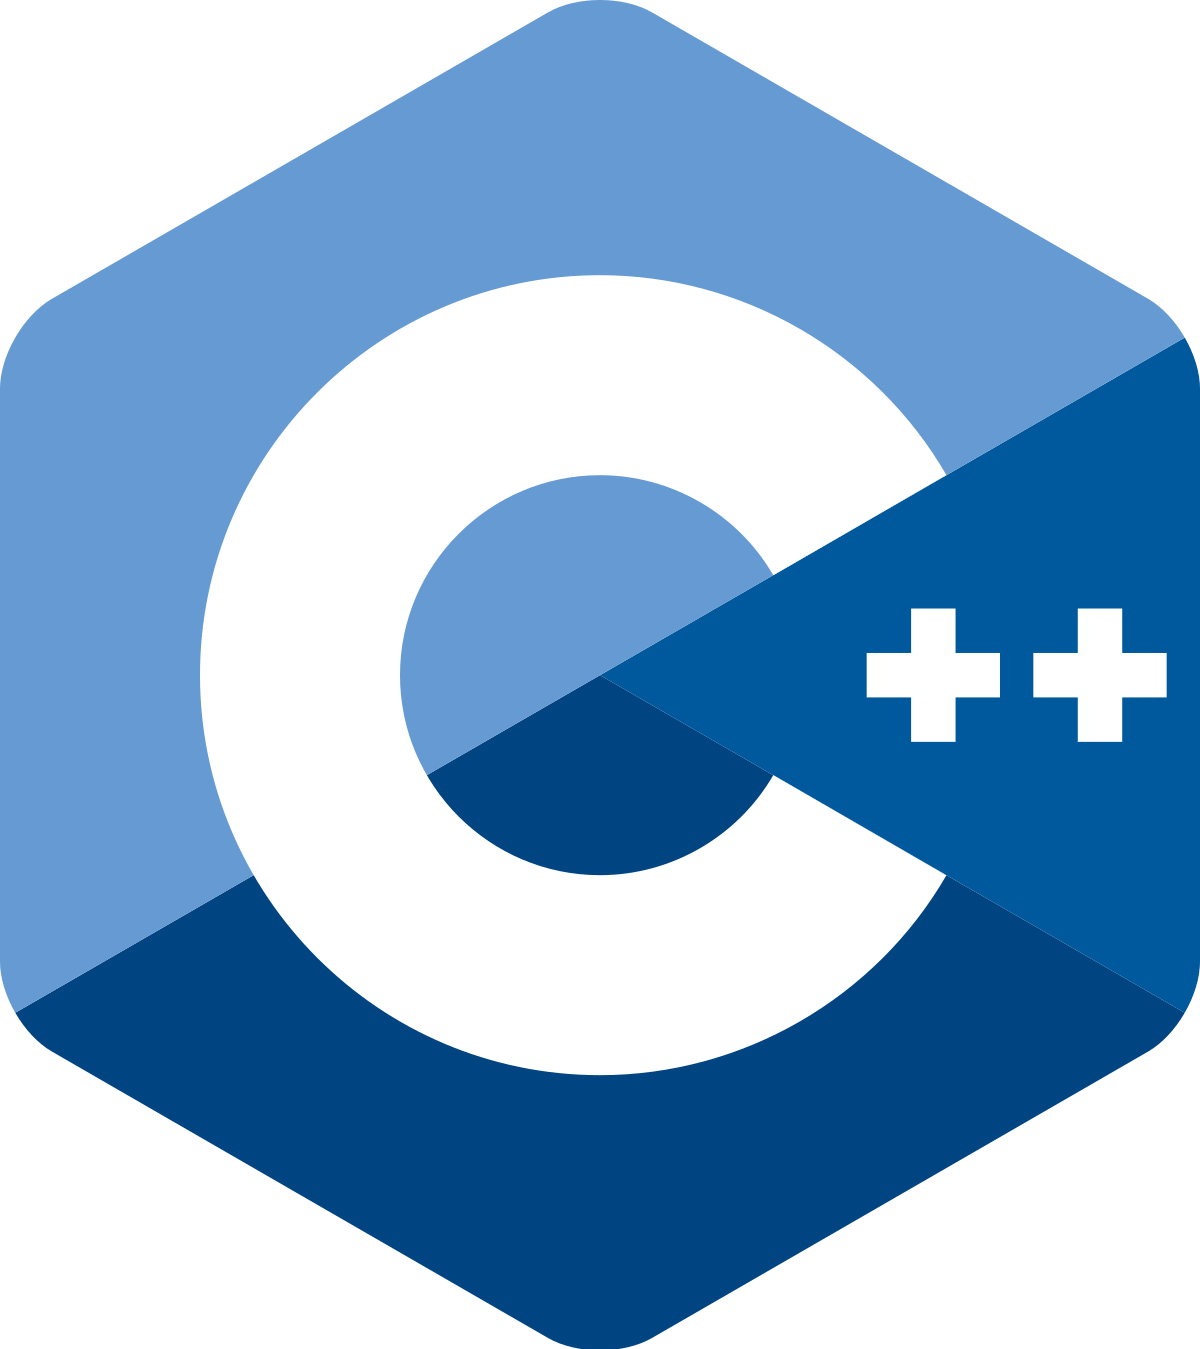 C Programming Language Logo - C++